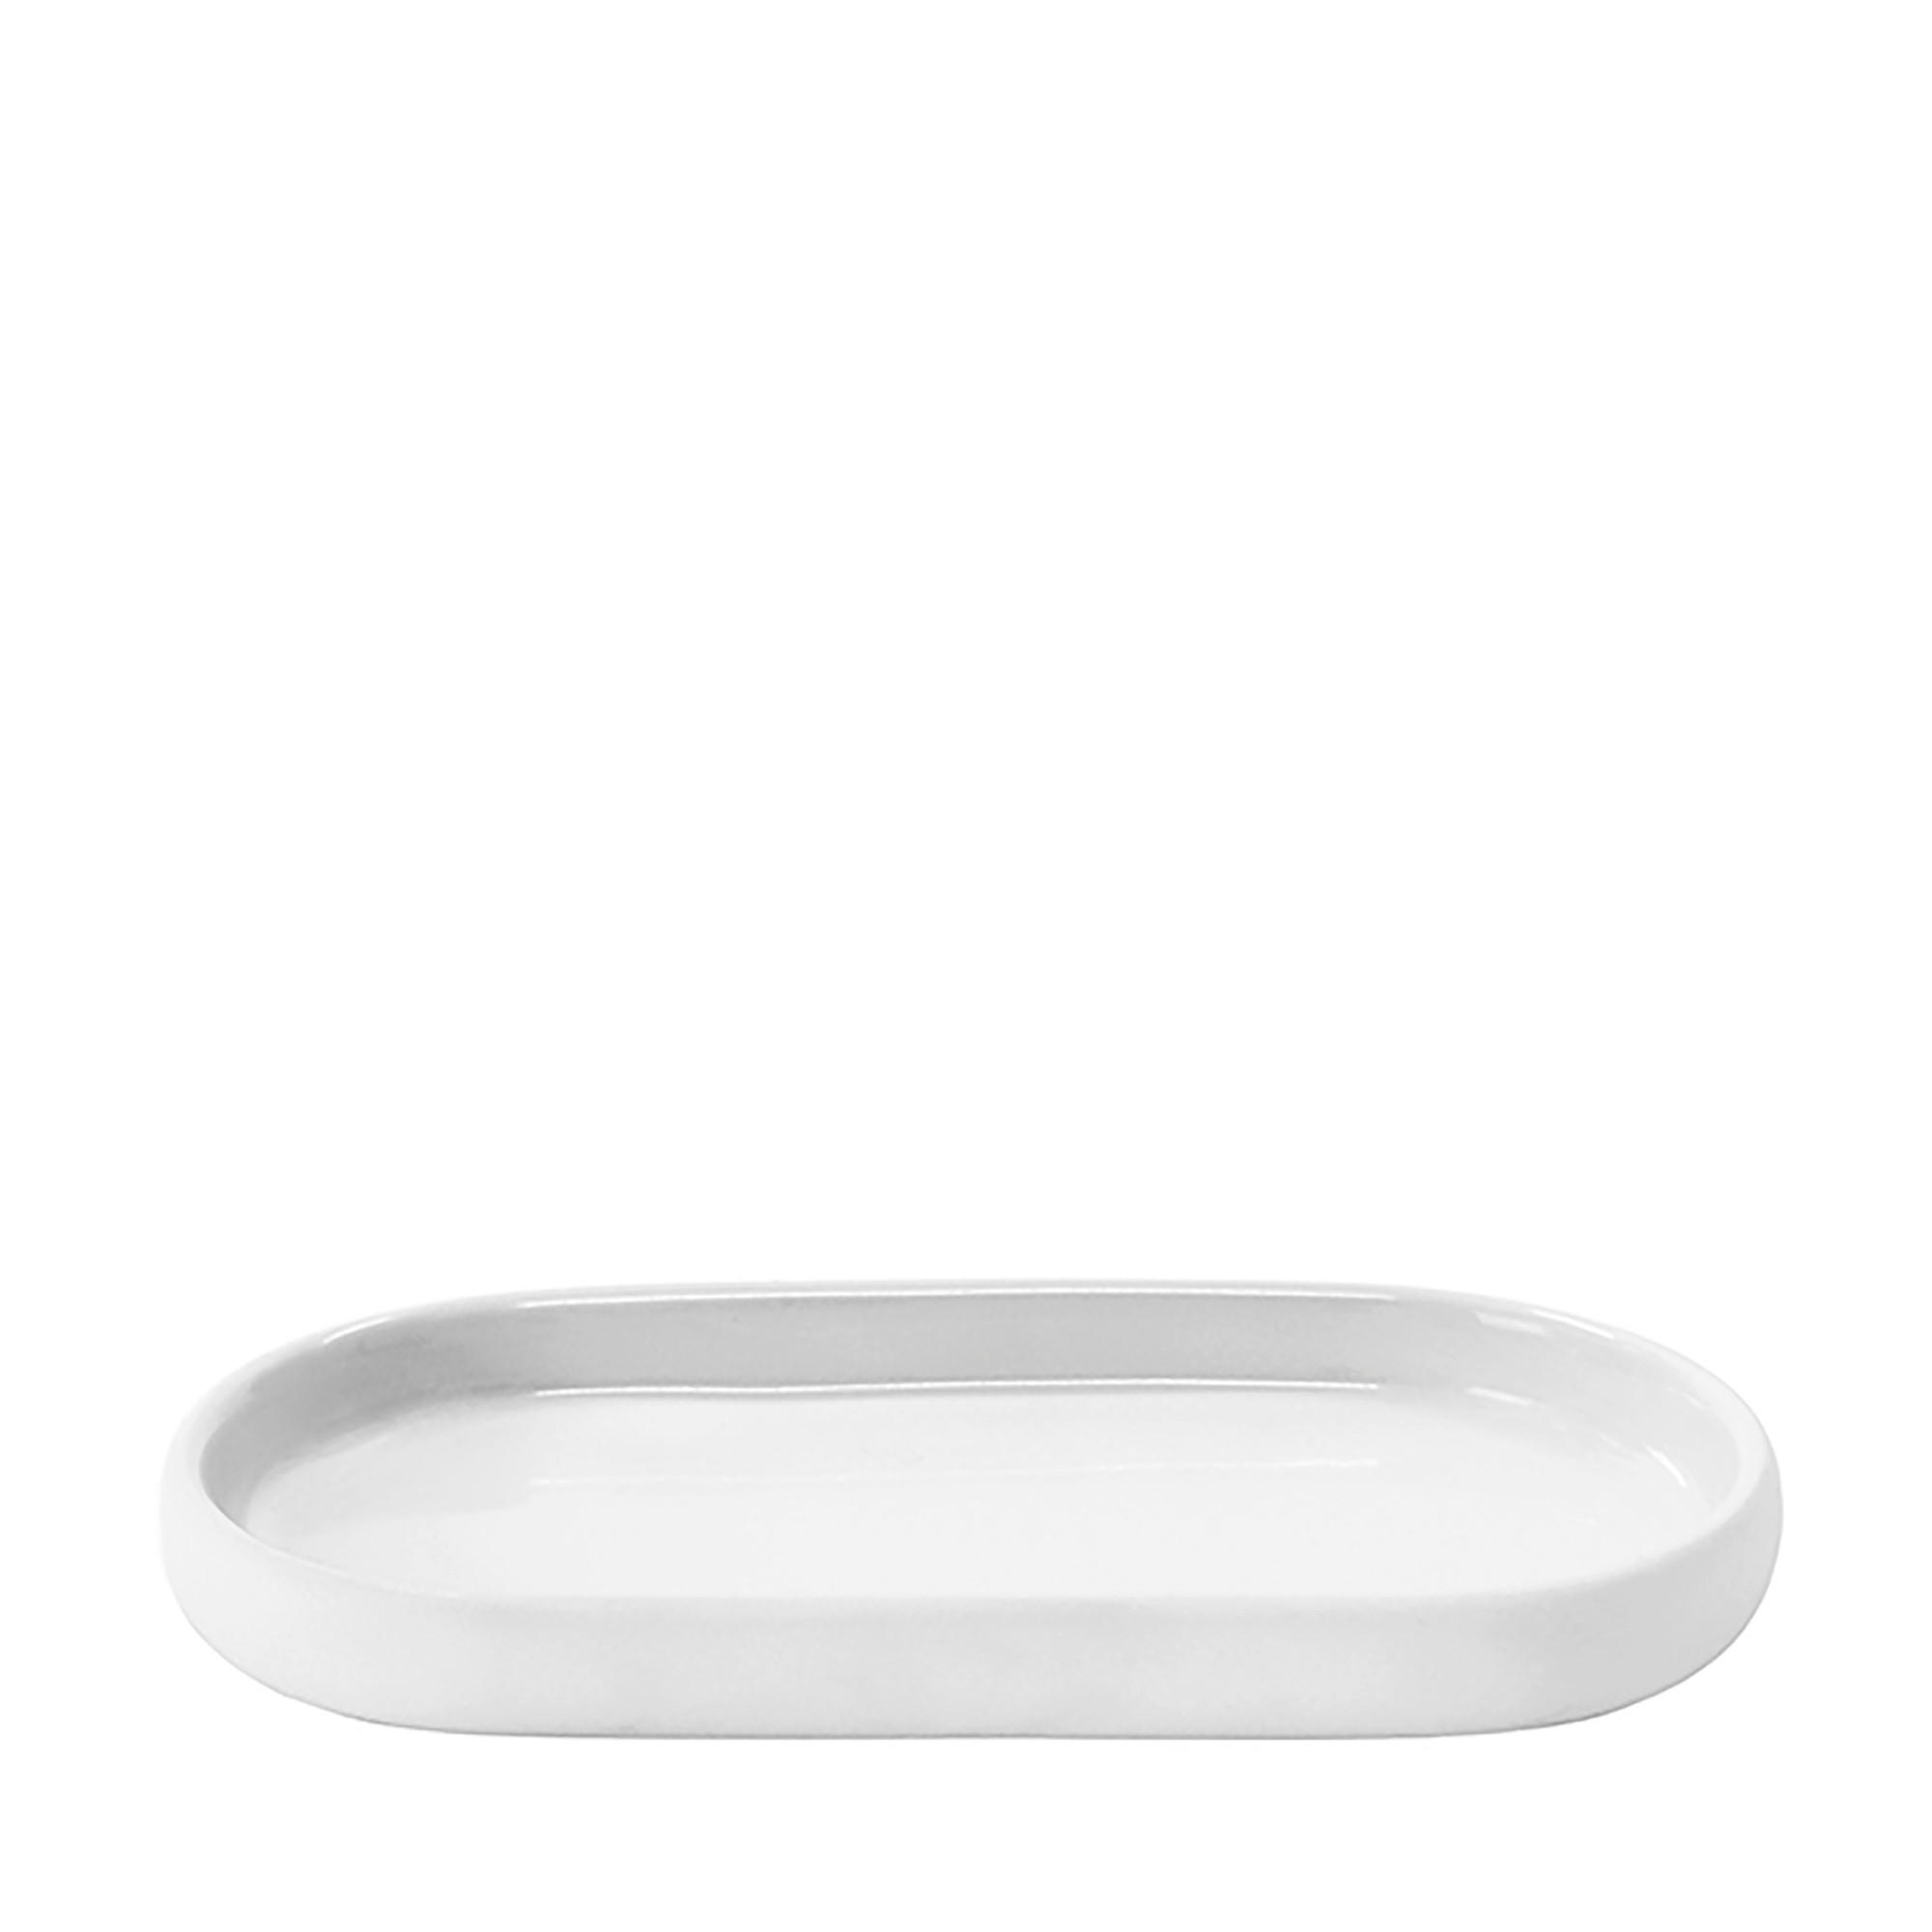 ABLAGE Keramik Weiß  - Weiß, Design, Keramik (10/2,5/19cm) - Blomus